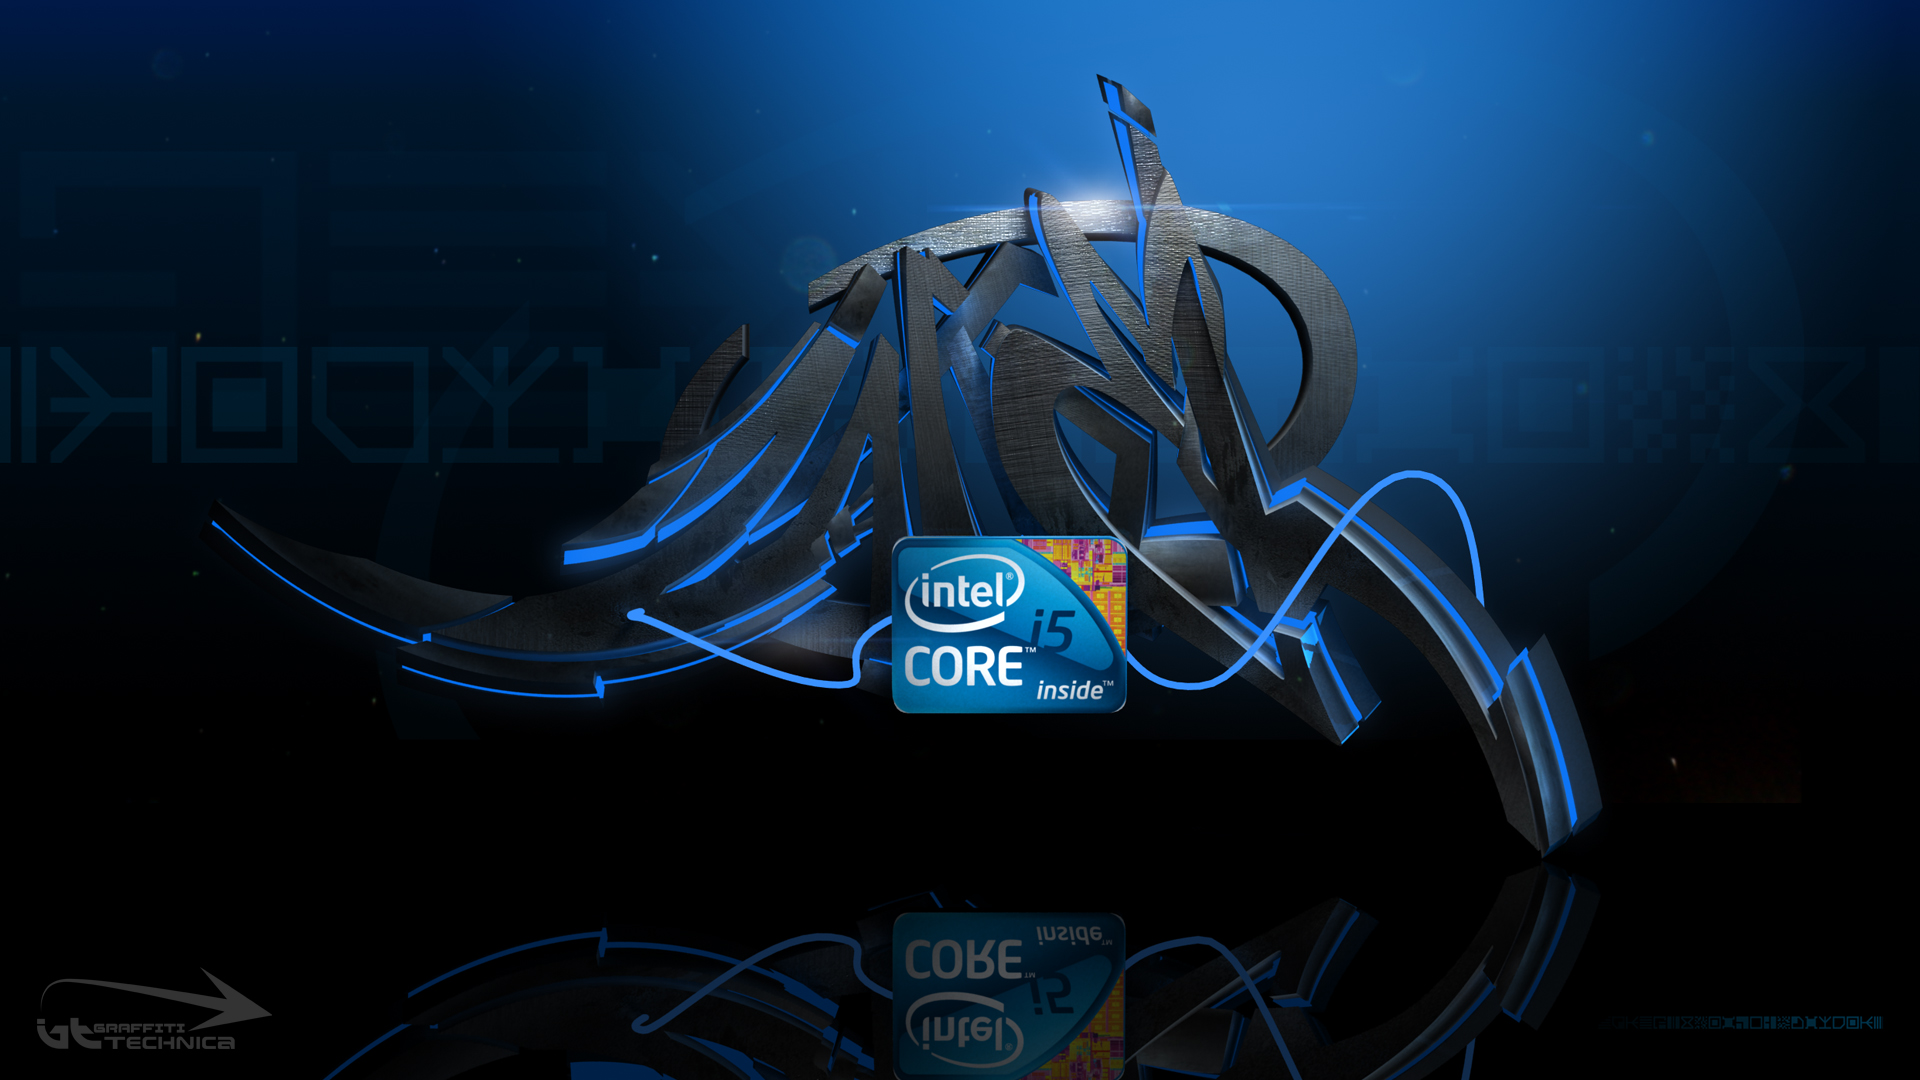 Intel I5 Wallpaper On